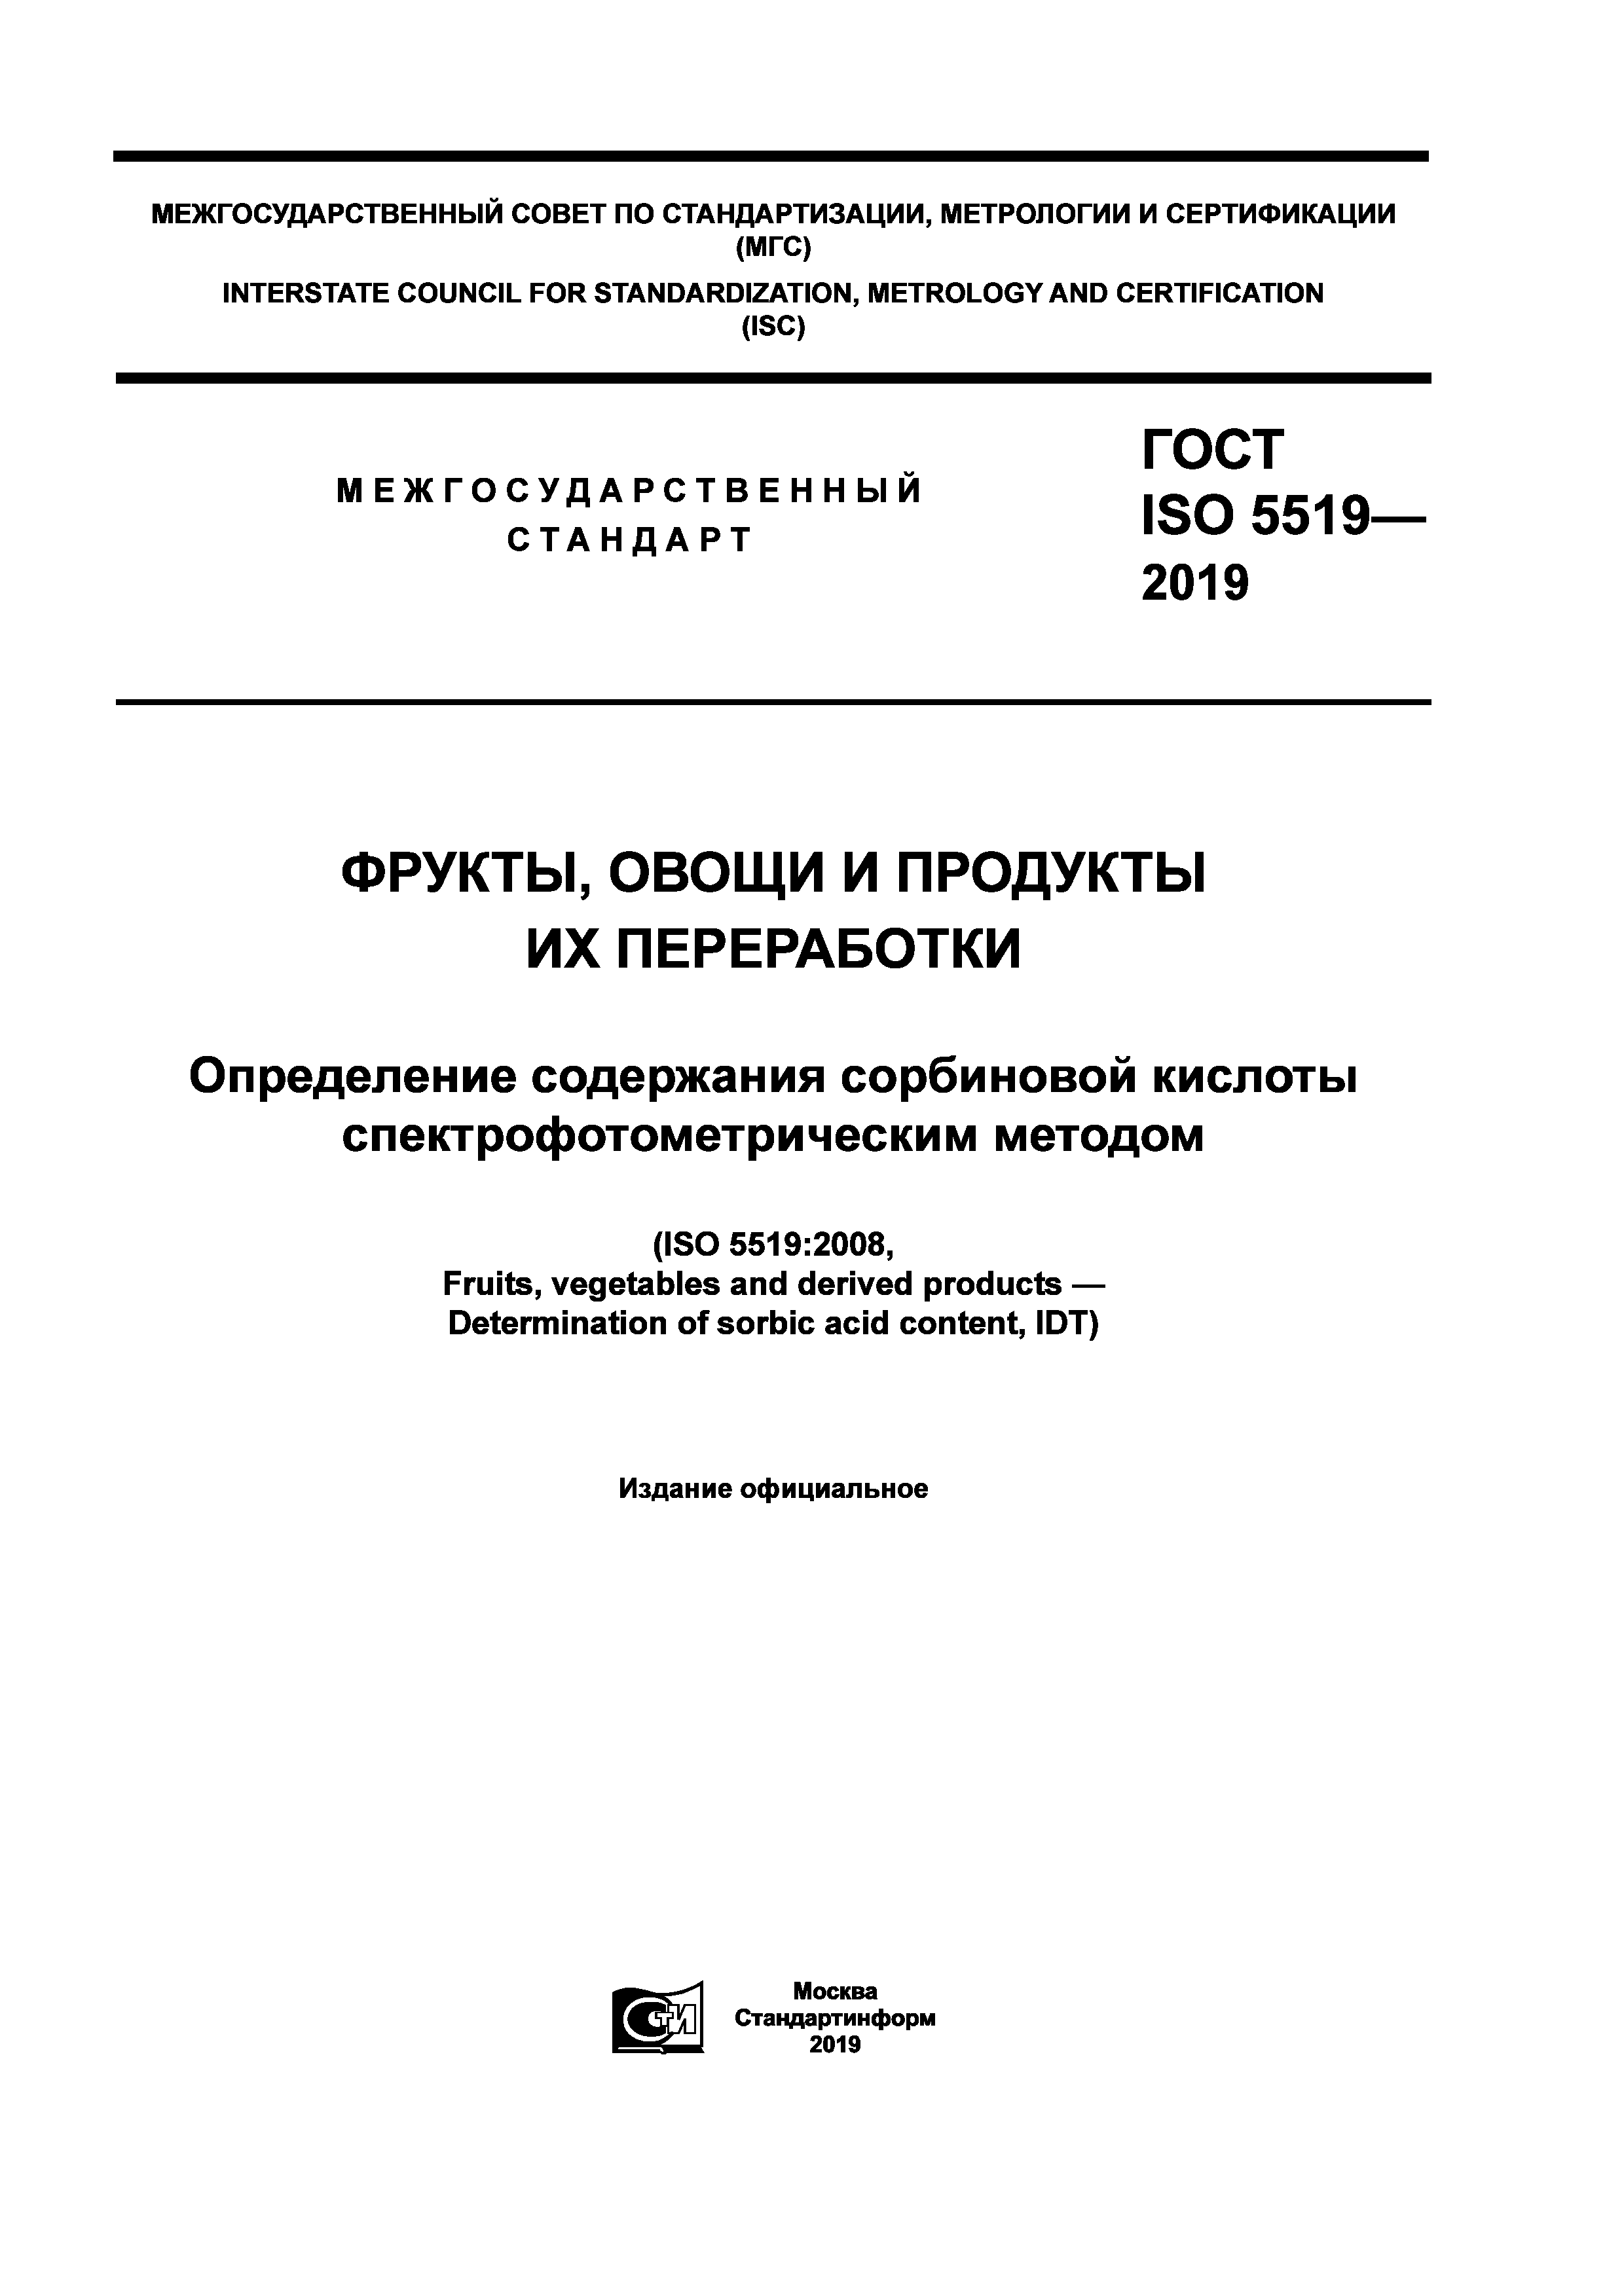 ГОСТ ISO 5519-2019